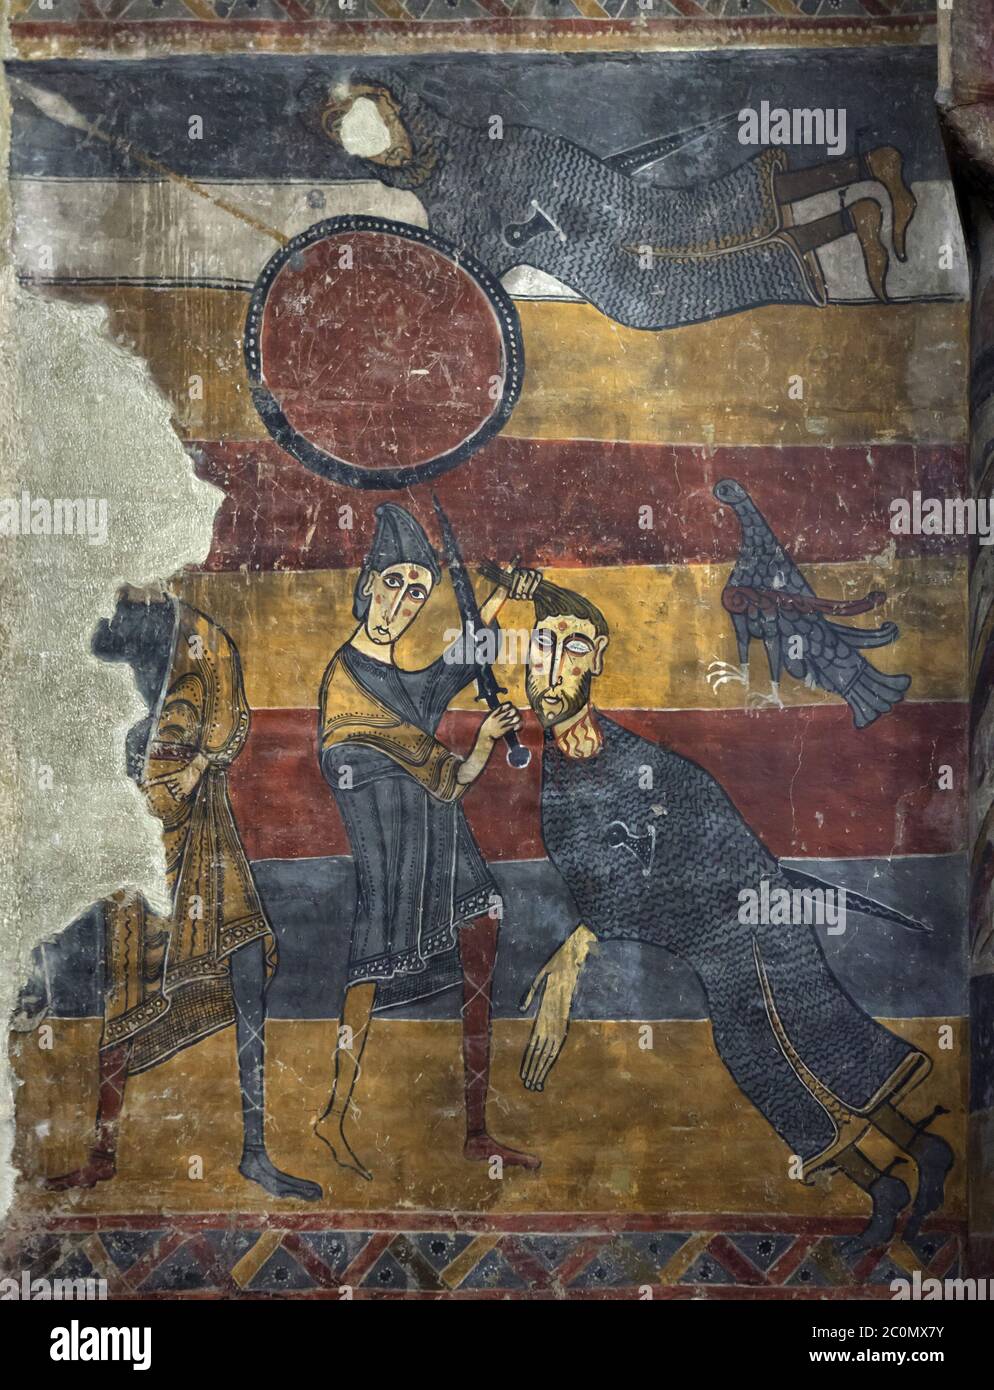 David und Goliath, die in dem vor 1123 fertiggestellten mittelalterlichen romanischen Fresko aus der Kirche Santa Maria de Taüll in der Gegend von Vall de Boí in Alta Ribagorça in Katalonien, Spanien, dargestellt sind, das jetzt im Nationalen Kunstmuseum von Katalonien (Museu Nacional d'Art de Catalunya) in Barcelona ausgestellt ist, Katalonien, Spanien. Stockfoto